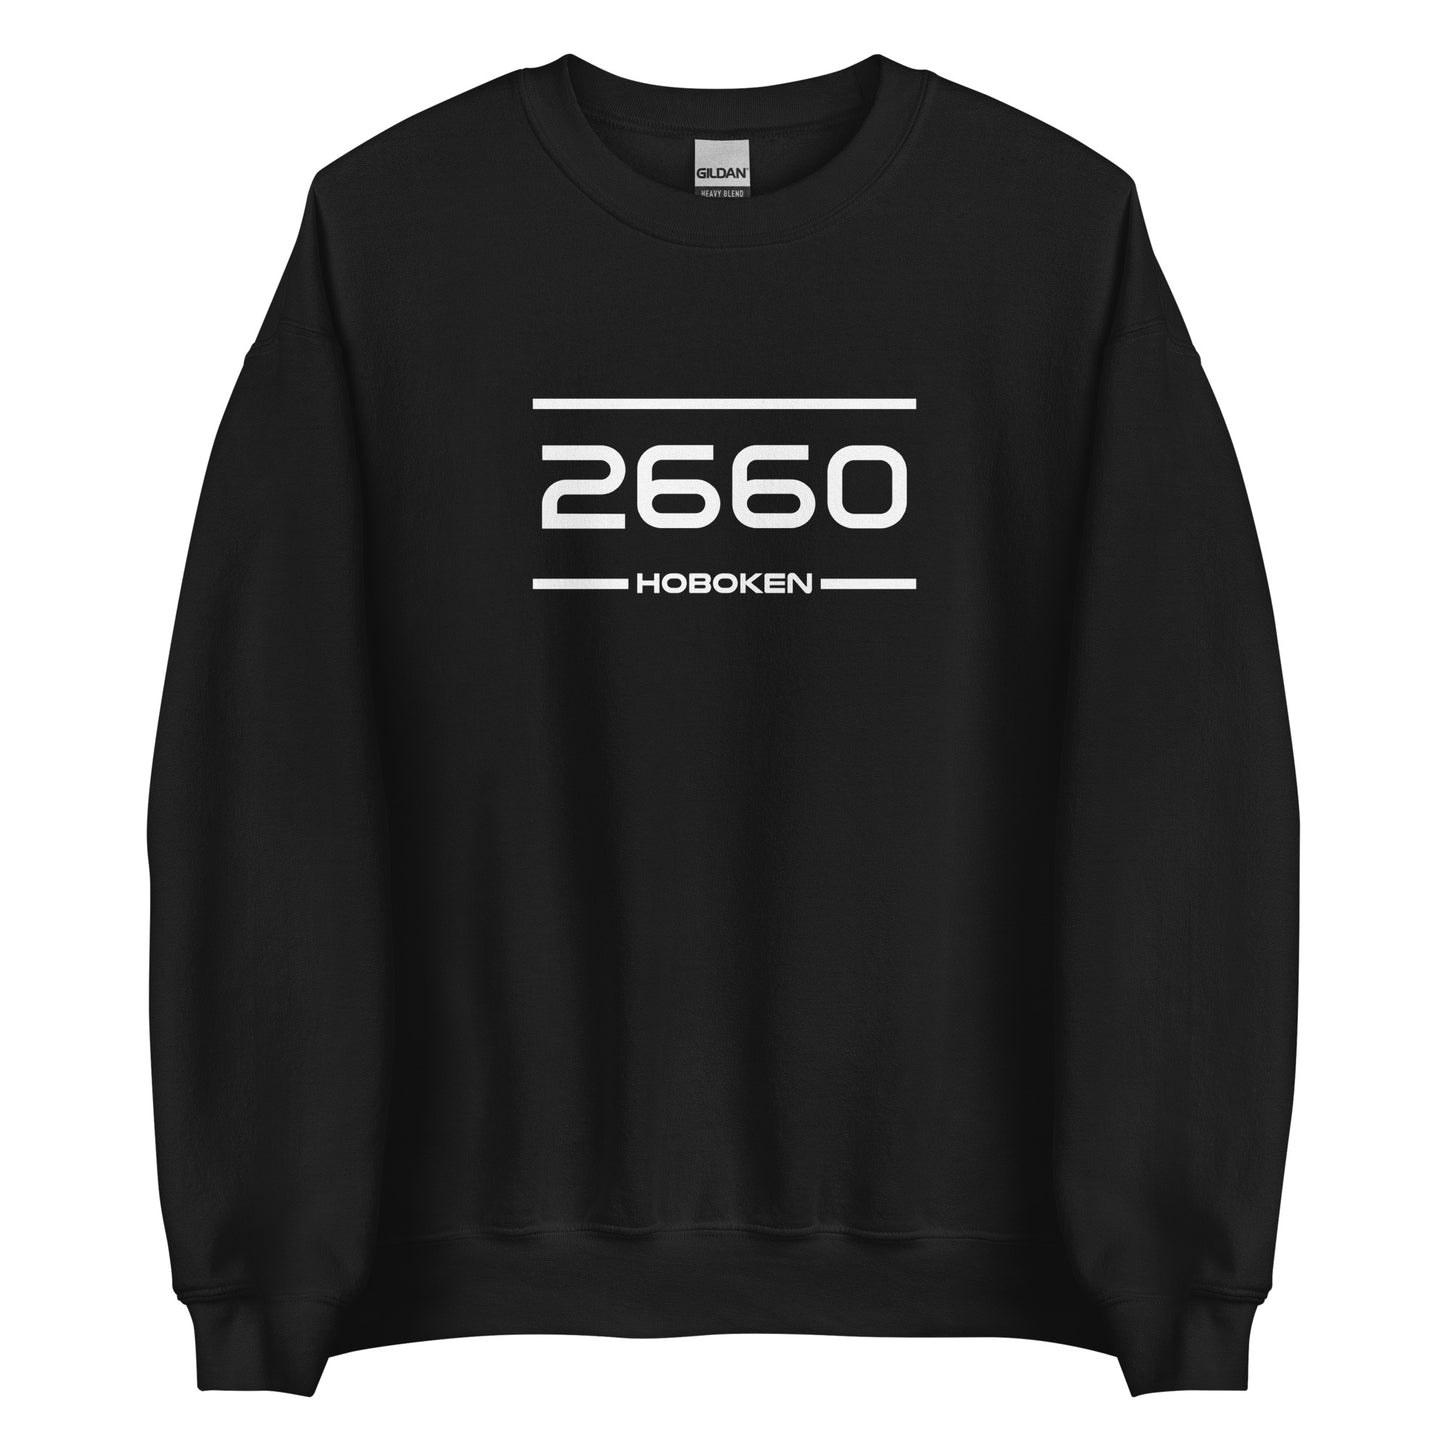 Sweater - 2660 - Hoboken (M/V)